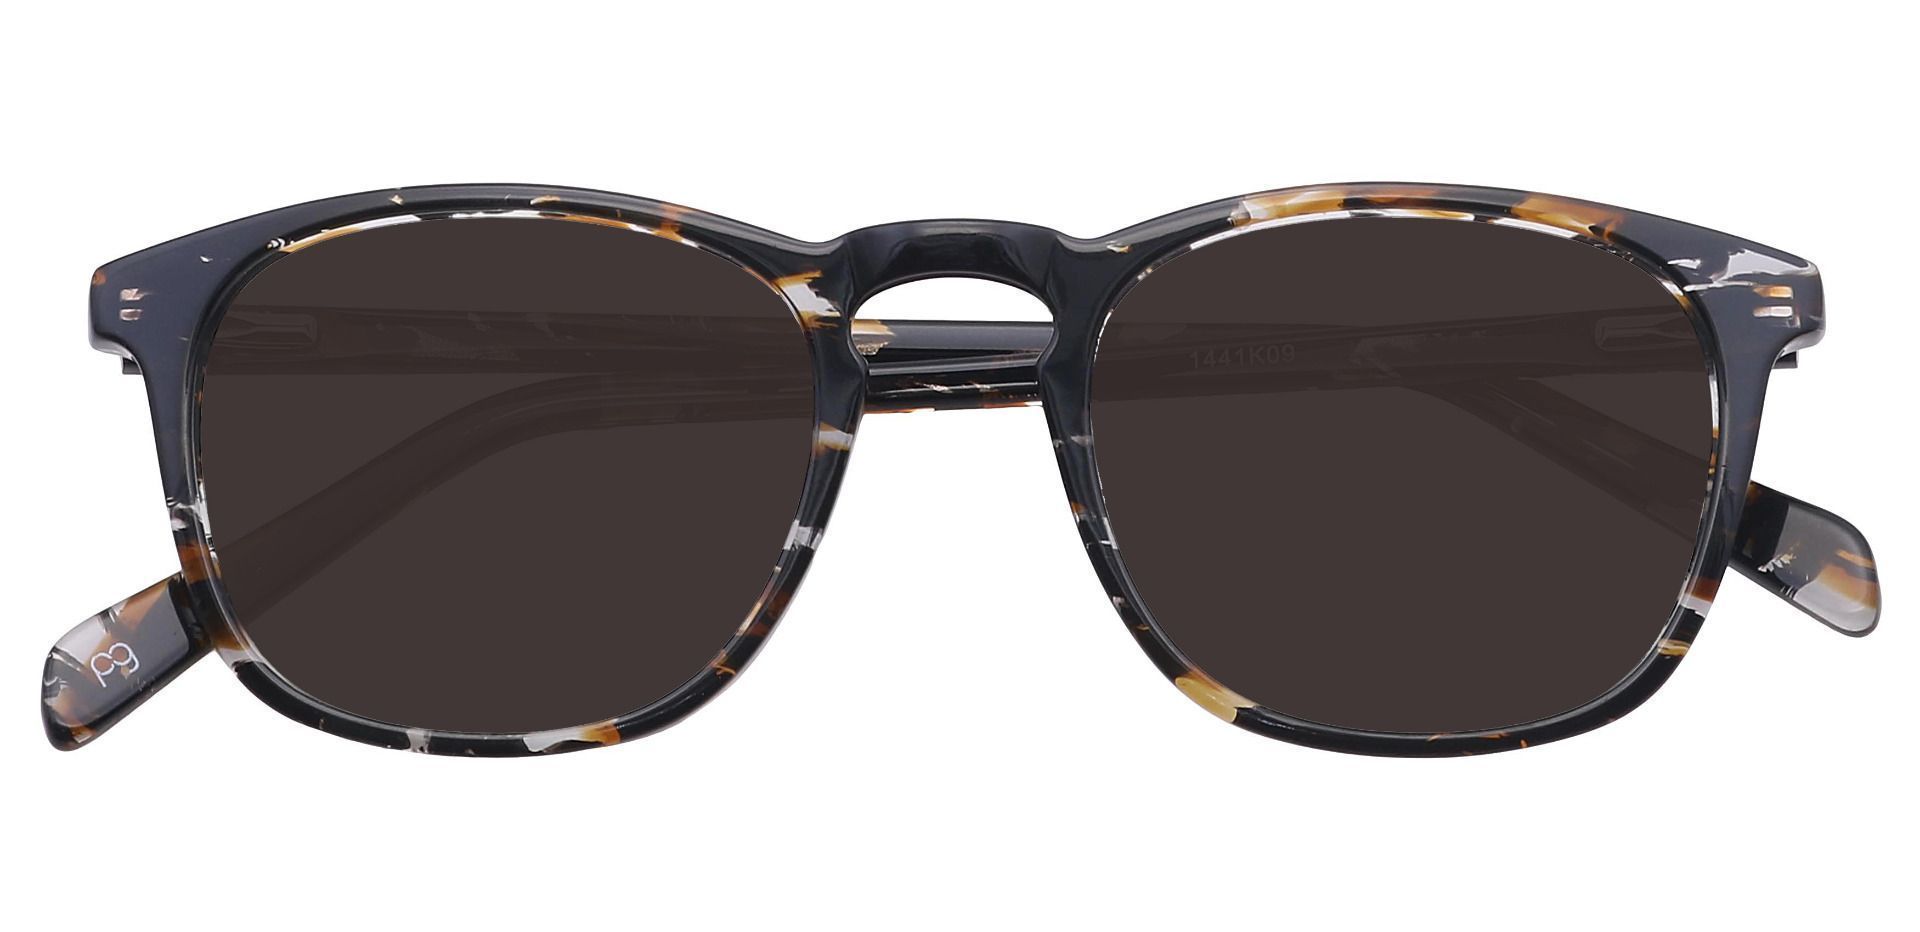 Venti Square Non-Rx Sunglasses - Black Frame With Gray Lenses